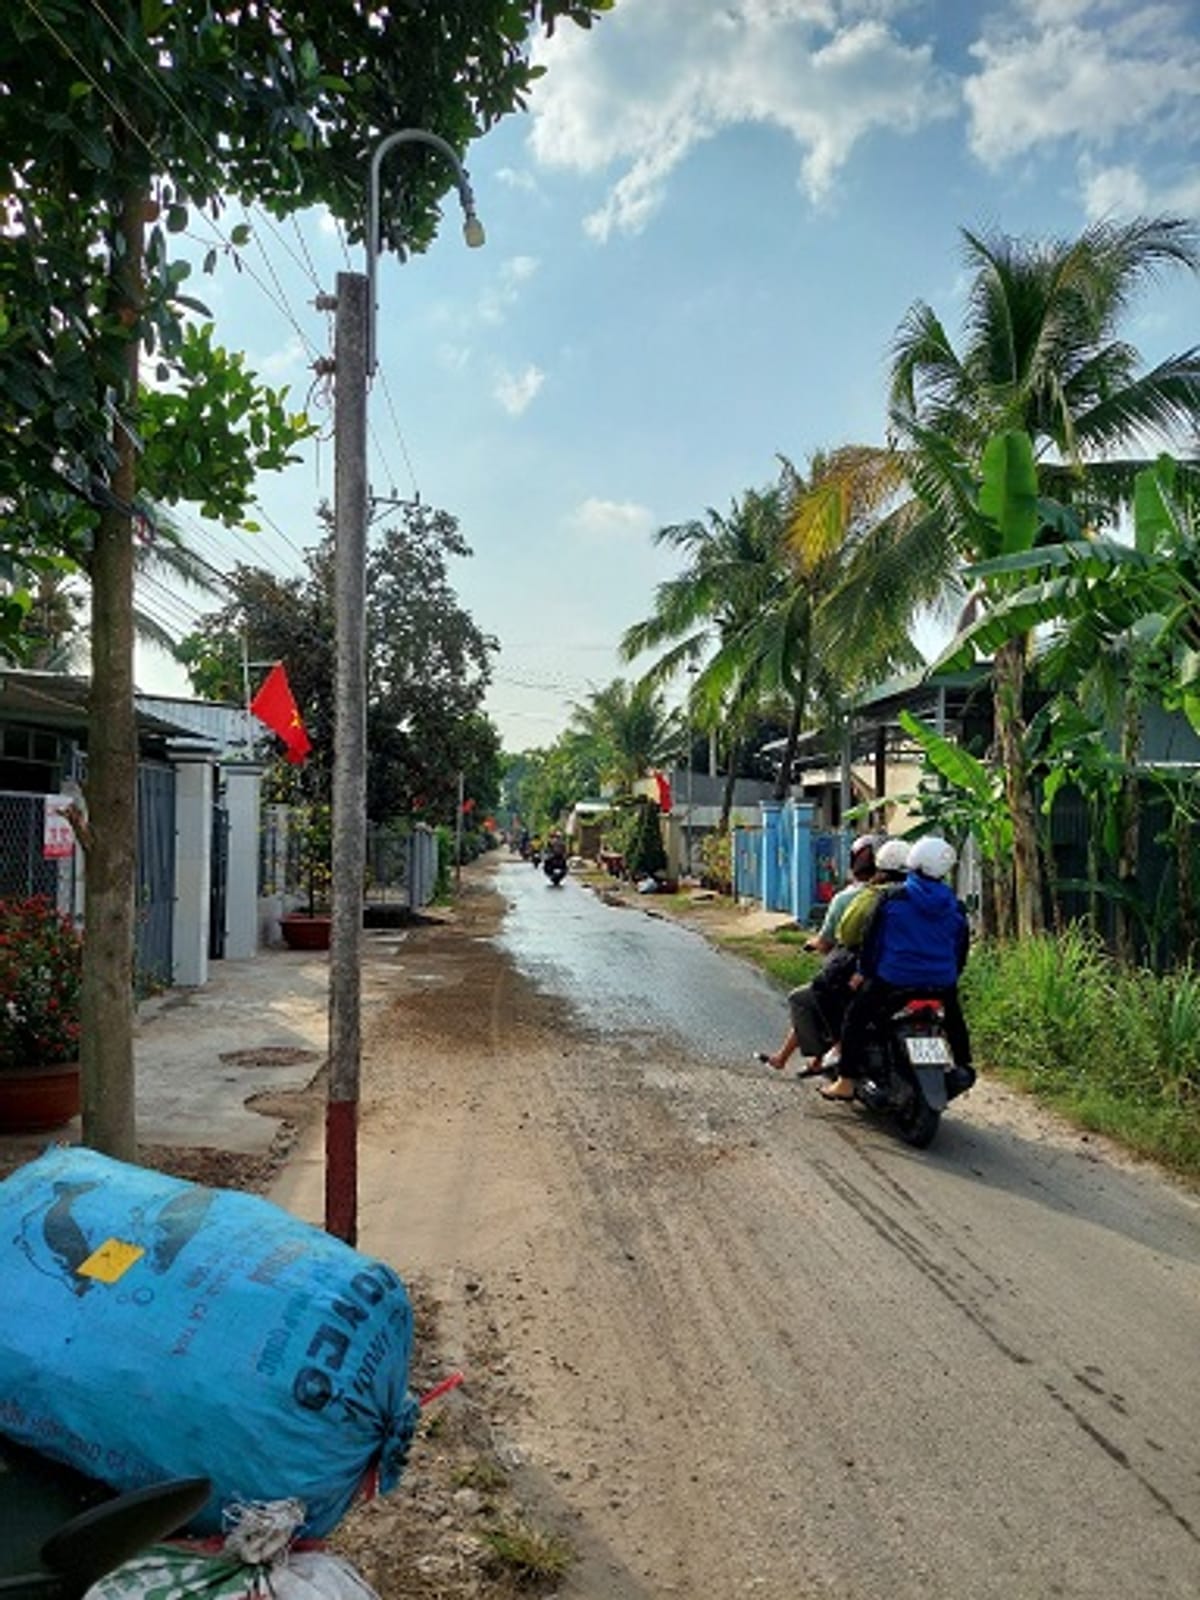 Cần bán miếng  đất tại xã Vĩnh Lộc, huyện An Phú, tỉnh An Giang, gần UBND xã Vĩnh Lộc (cách 1km), bên bờ kia sông Của